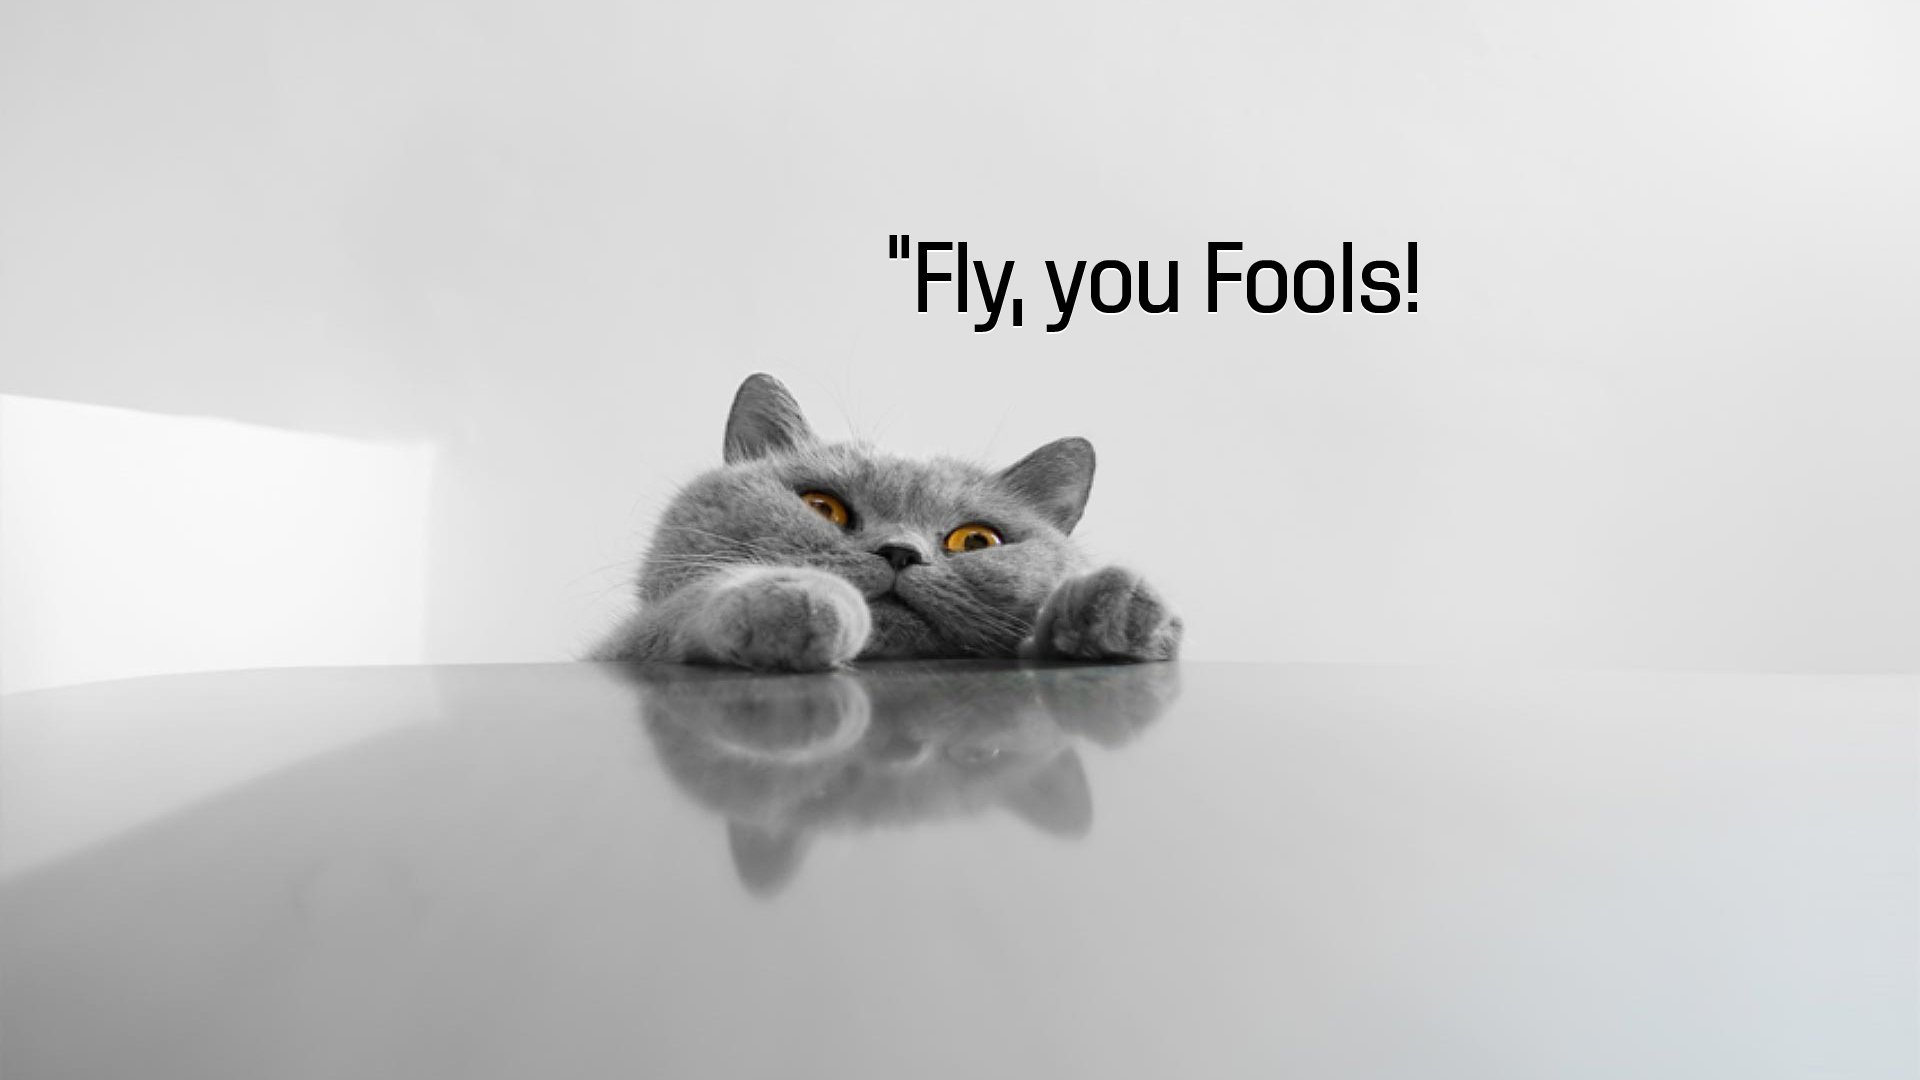 Cat Meme Quote Funny Humor Grumpy Wallpaper